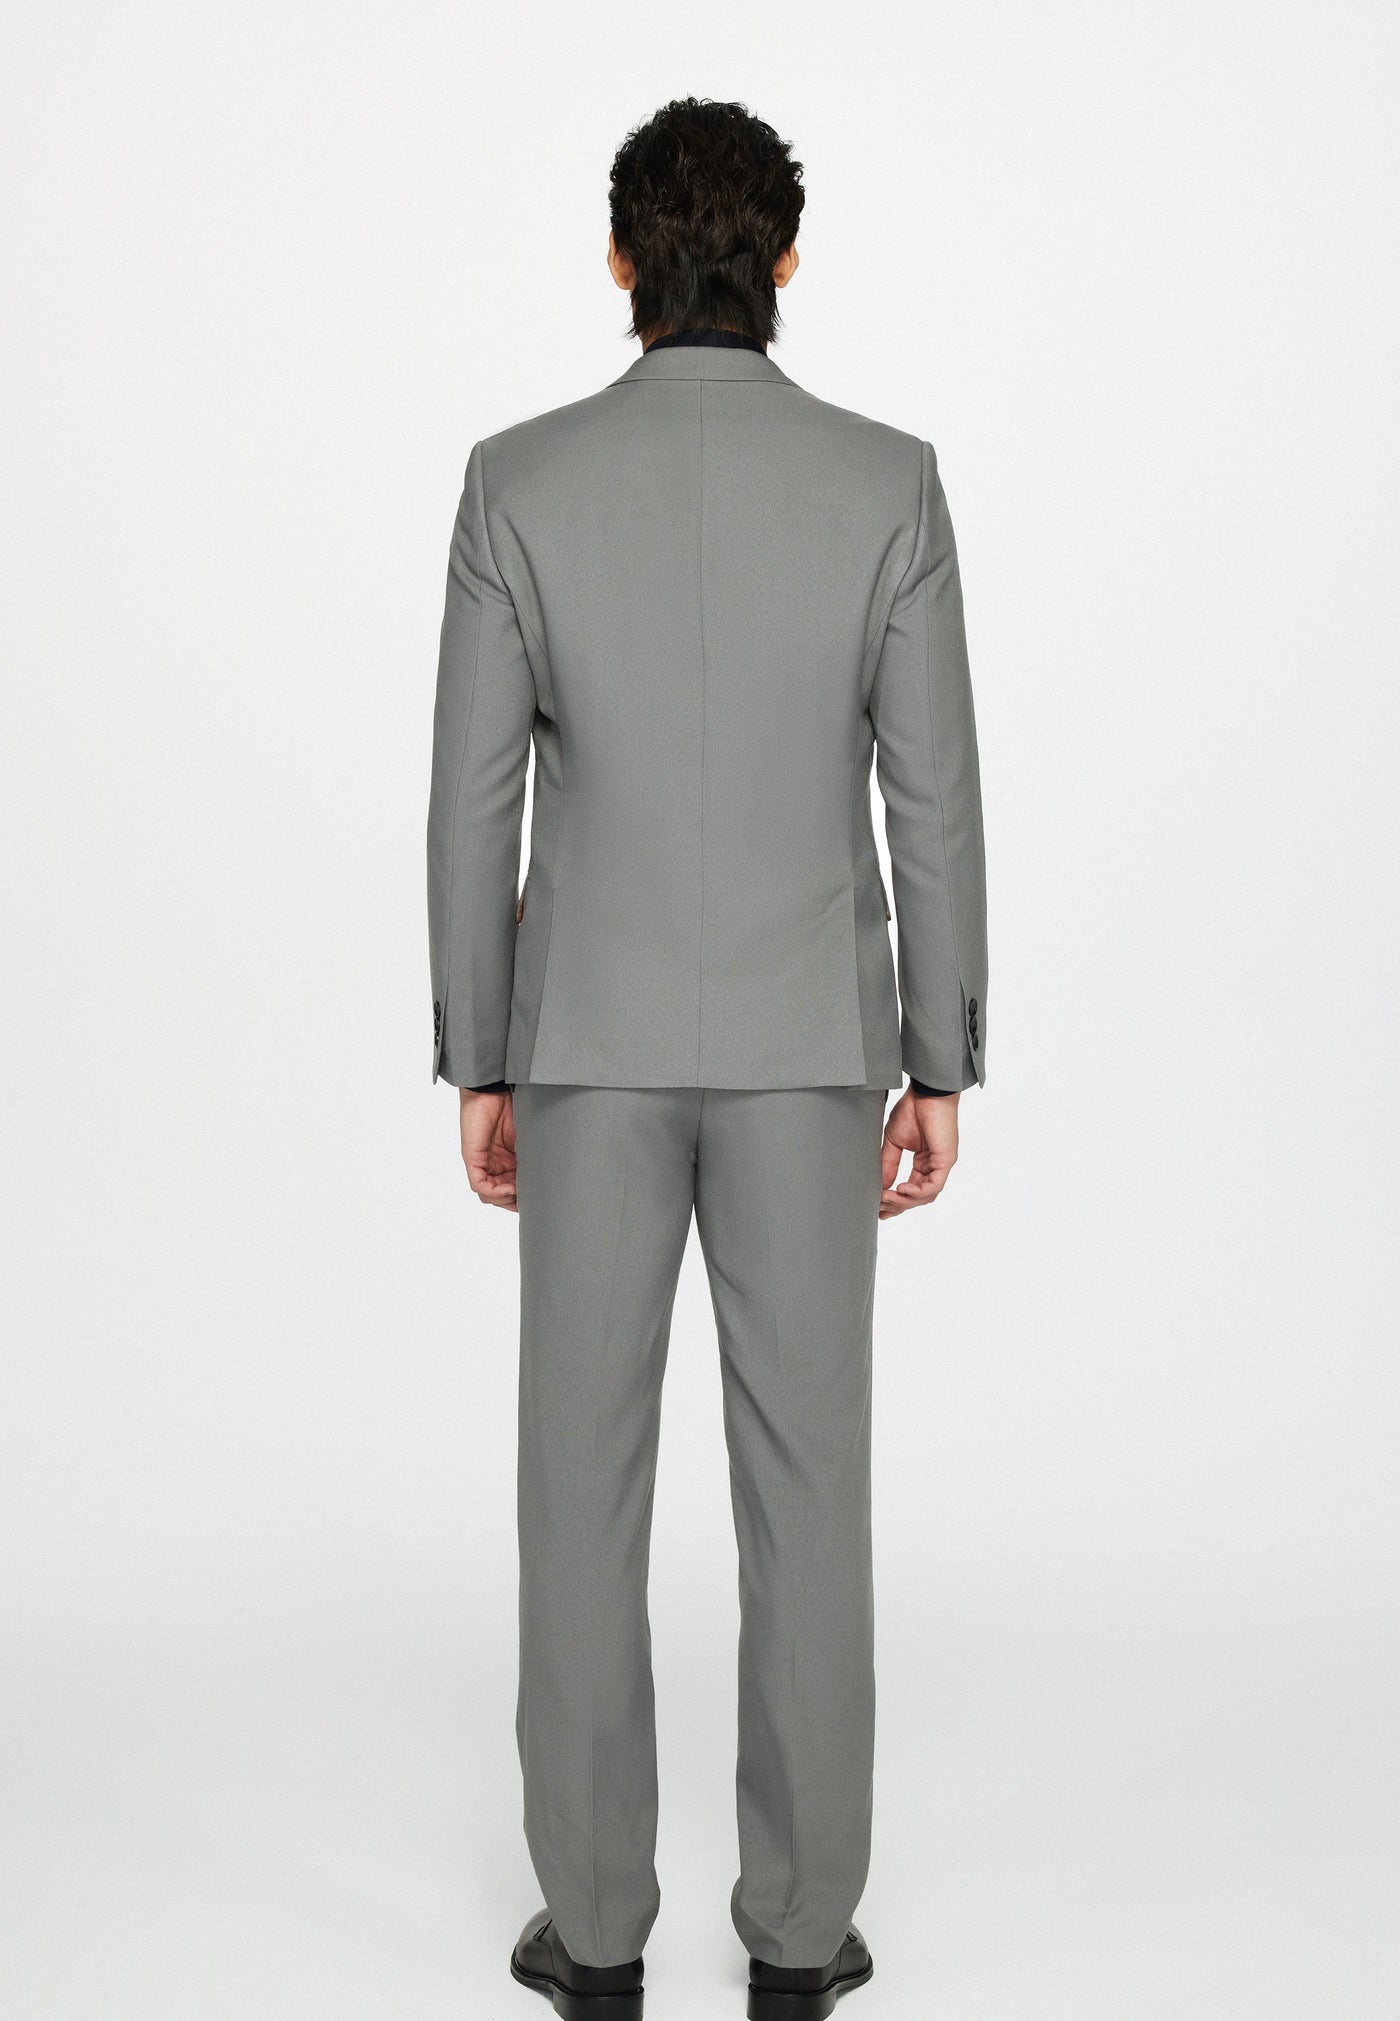 Men Clothing Teflon Suit Blazer Smart Fit